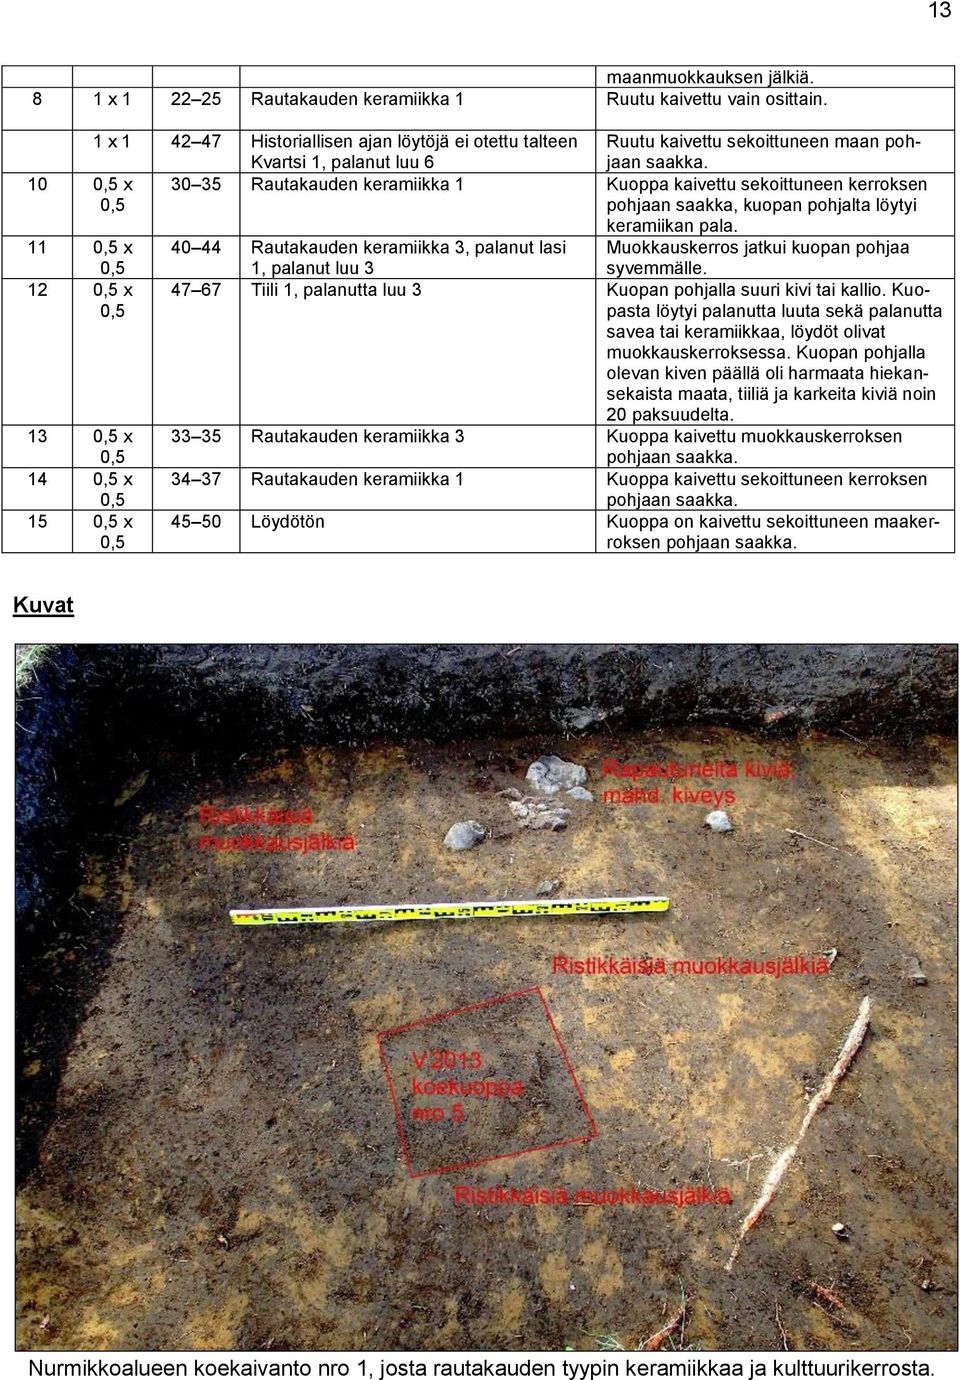 10 0,5 x 0,5 30 35 Rautakauden keramiikka 1 Kuoppa kaivettu sekoittuneen kerroksen pohjaan saakka, kuopan pohjalta löytyi keramiikan pala.